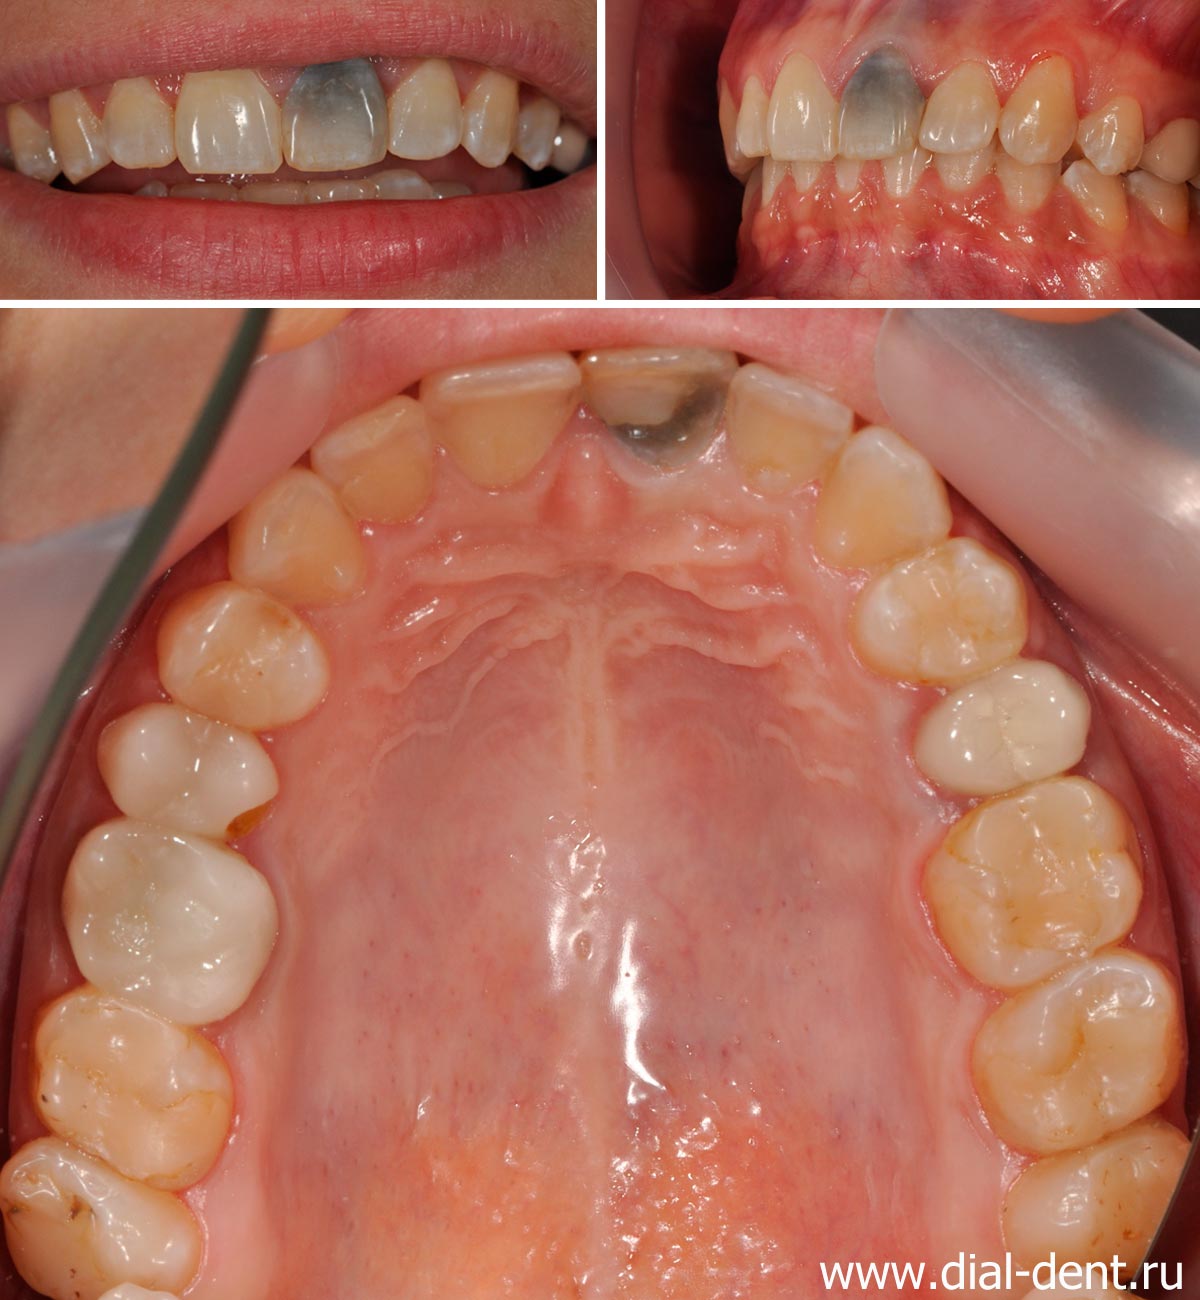 Заболевания, провоцирующие болезненную пульсацию в зубе